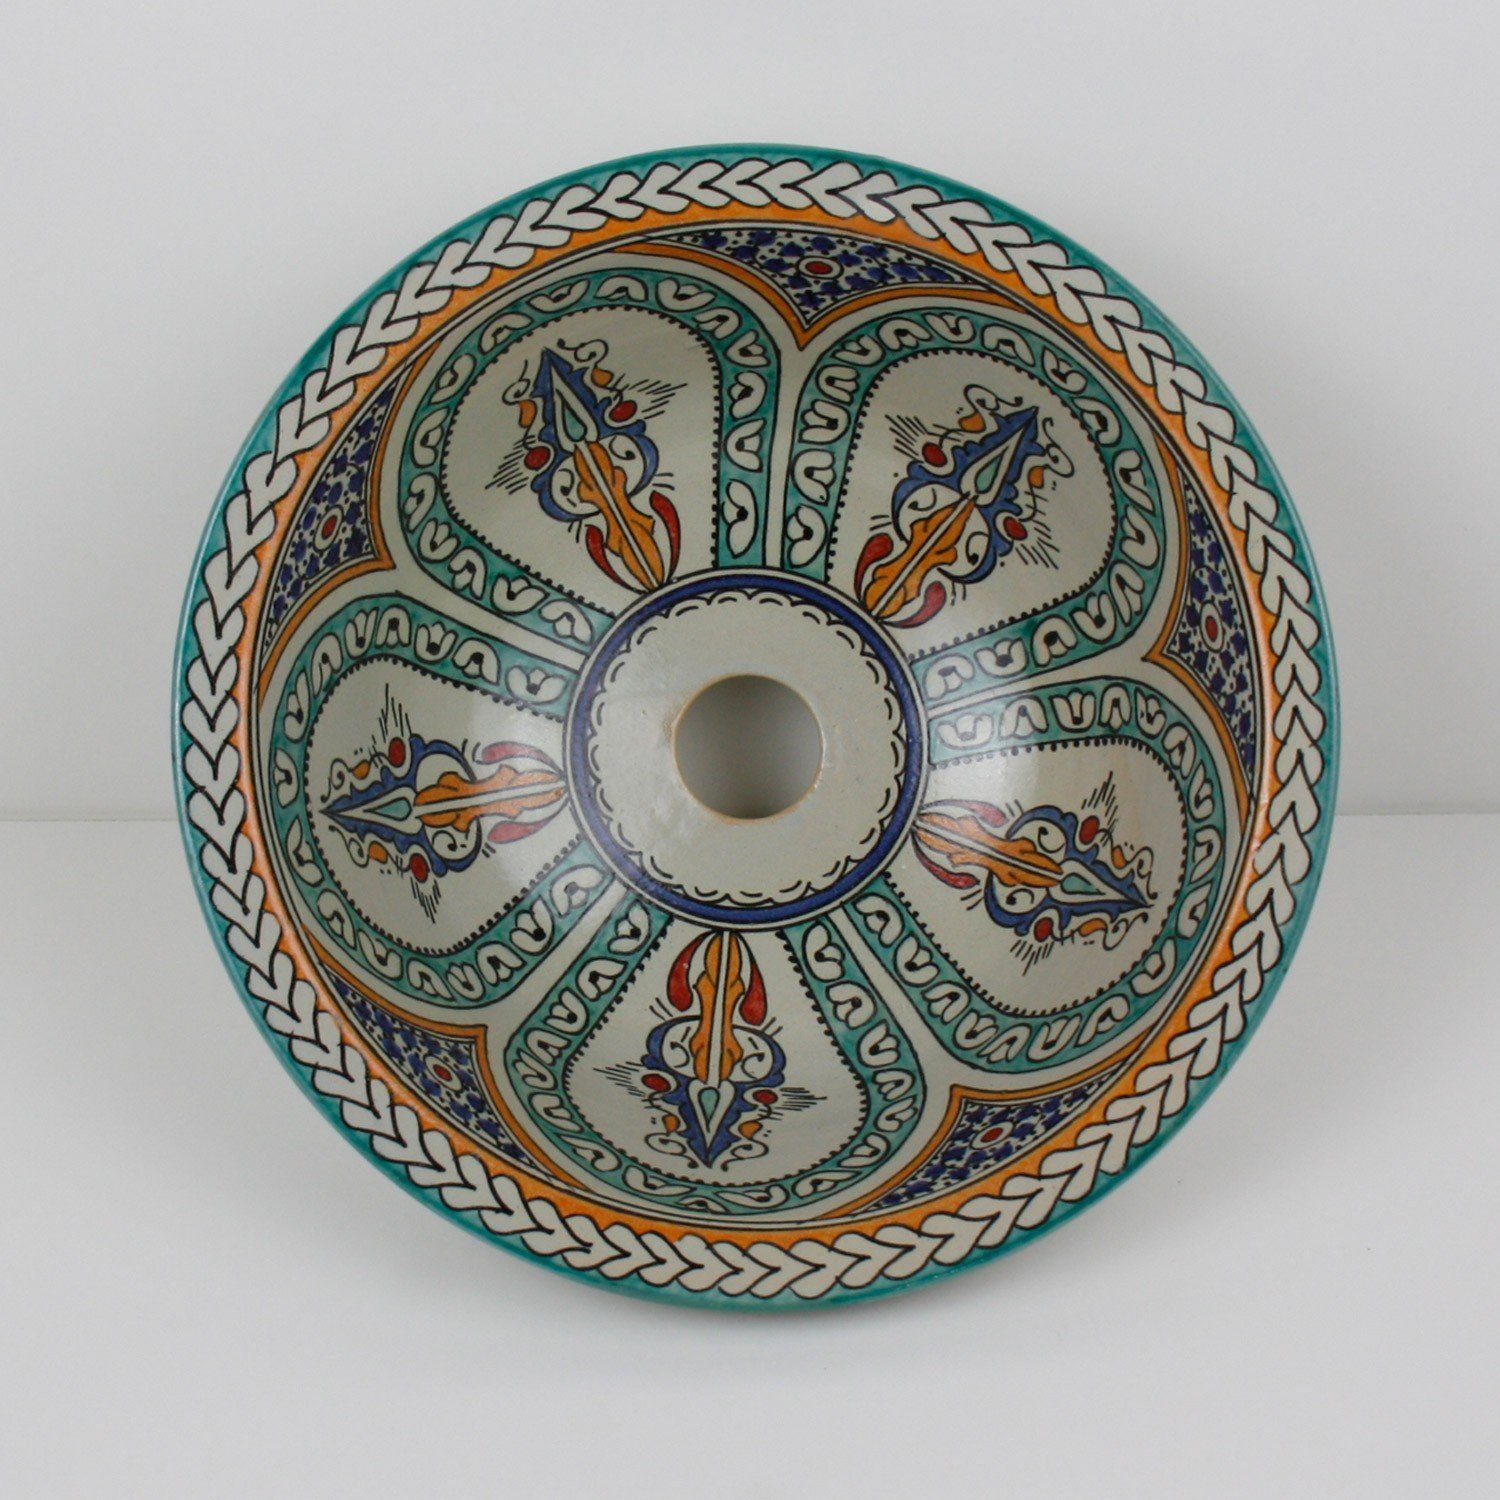 Casa Moro Waschbecken Casa Moro Marokkanisches Keramik Waschbecken Fes1 handmade (Buntes handwaschbecken), rundes Aufsatzbecken aus Marokko Durchmesser 35 cm